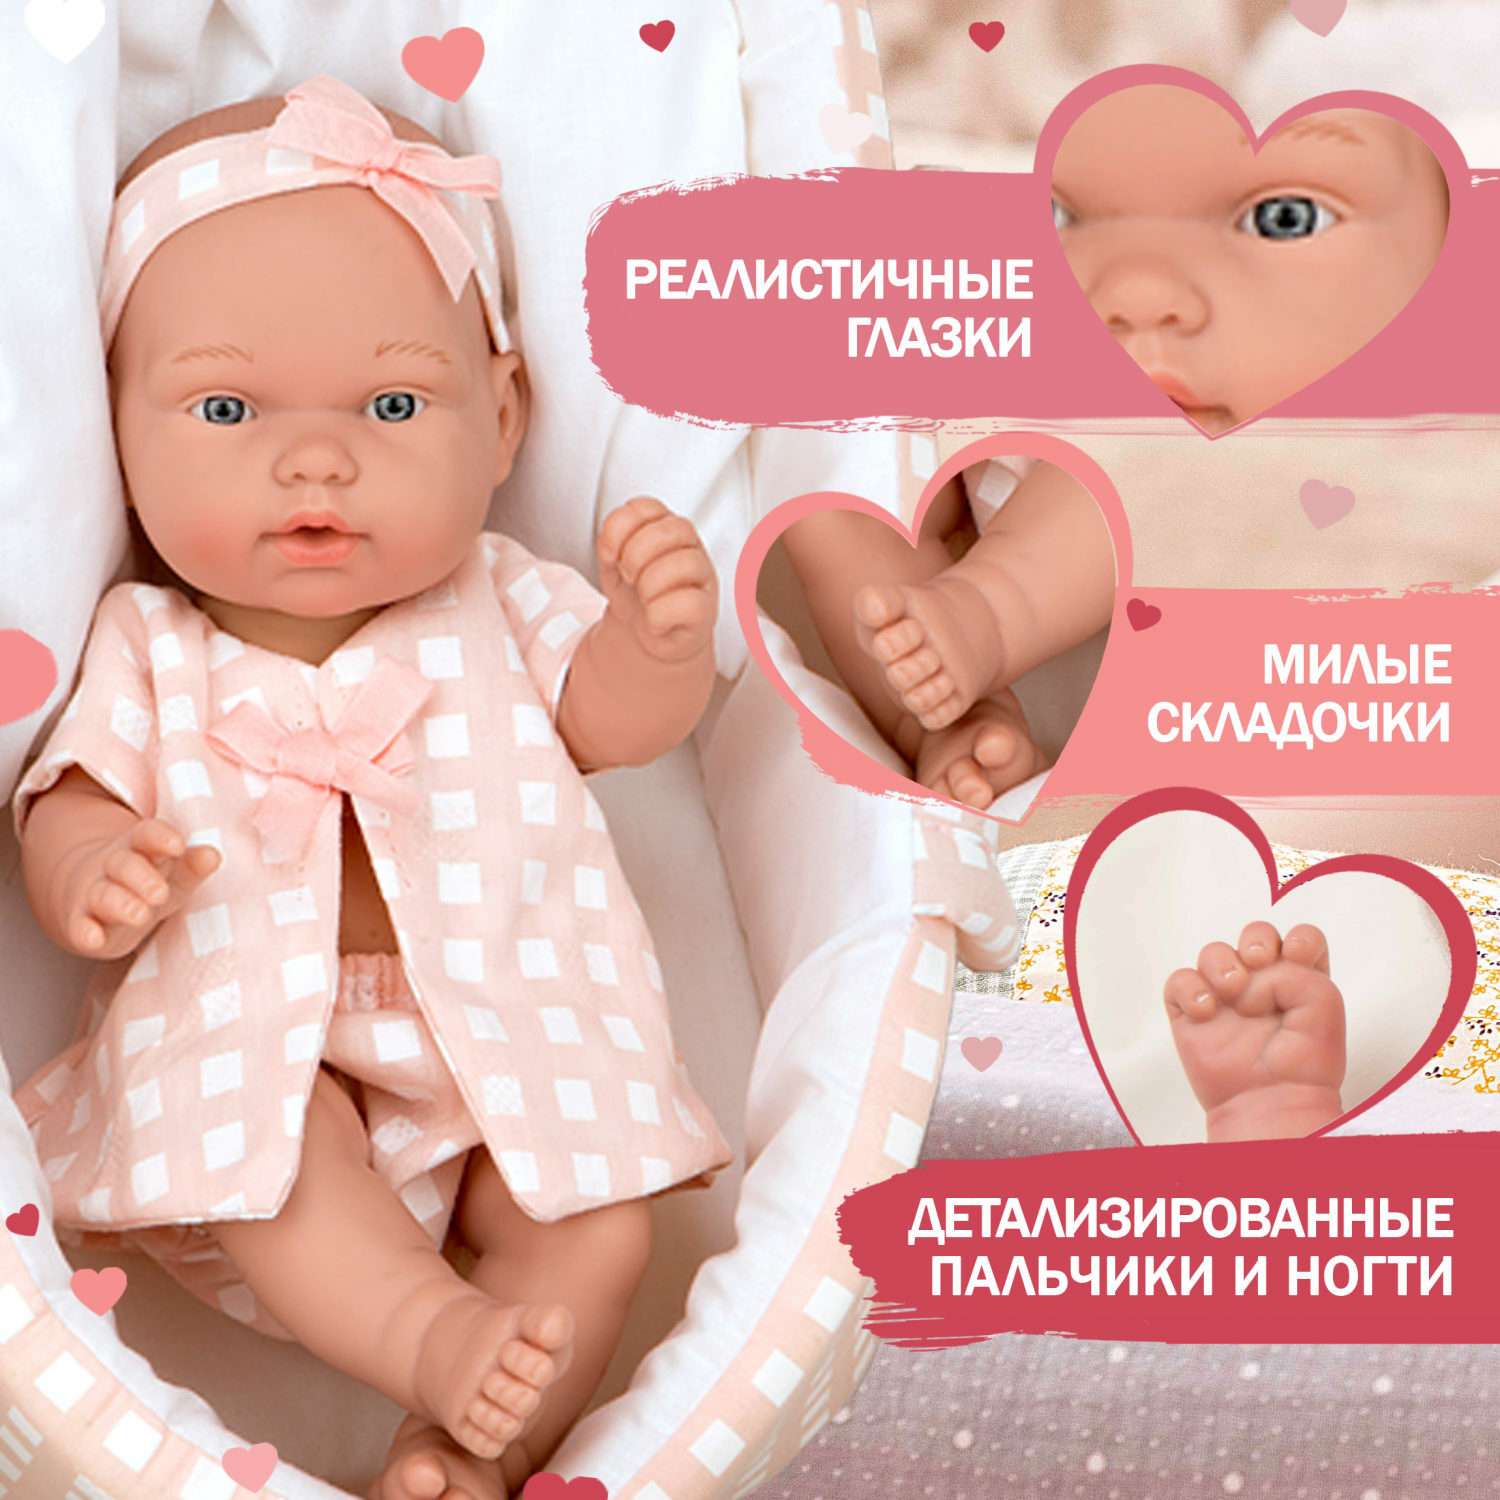 Кукла Arias ELEGANCE PILLINES в розовой одежде 26 см в люльке Т22895 - фото 1